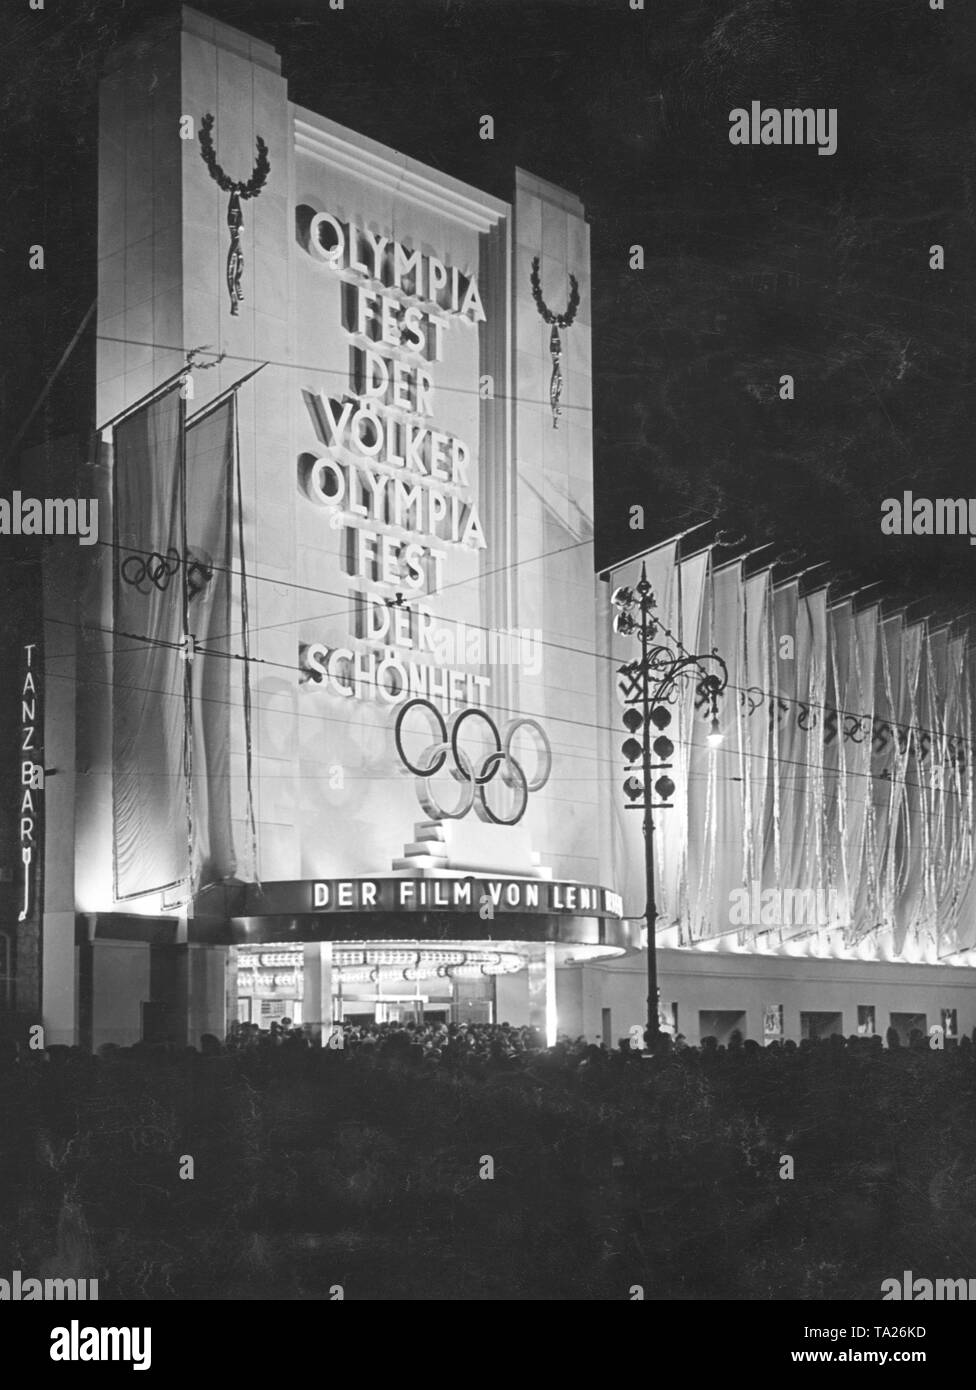 Riefenstahl met Hitler tijdens de première van Olympia